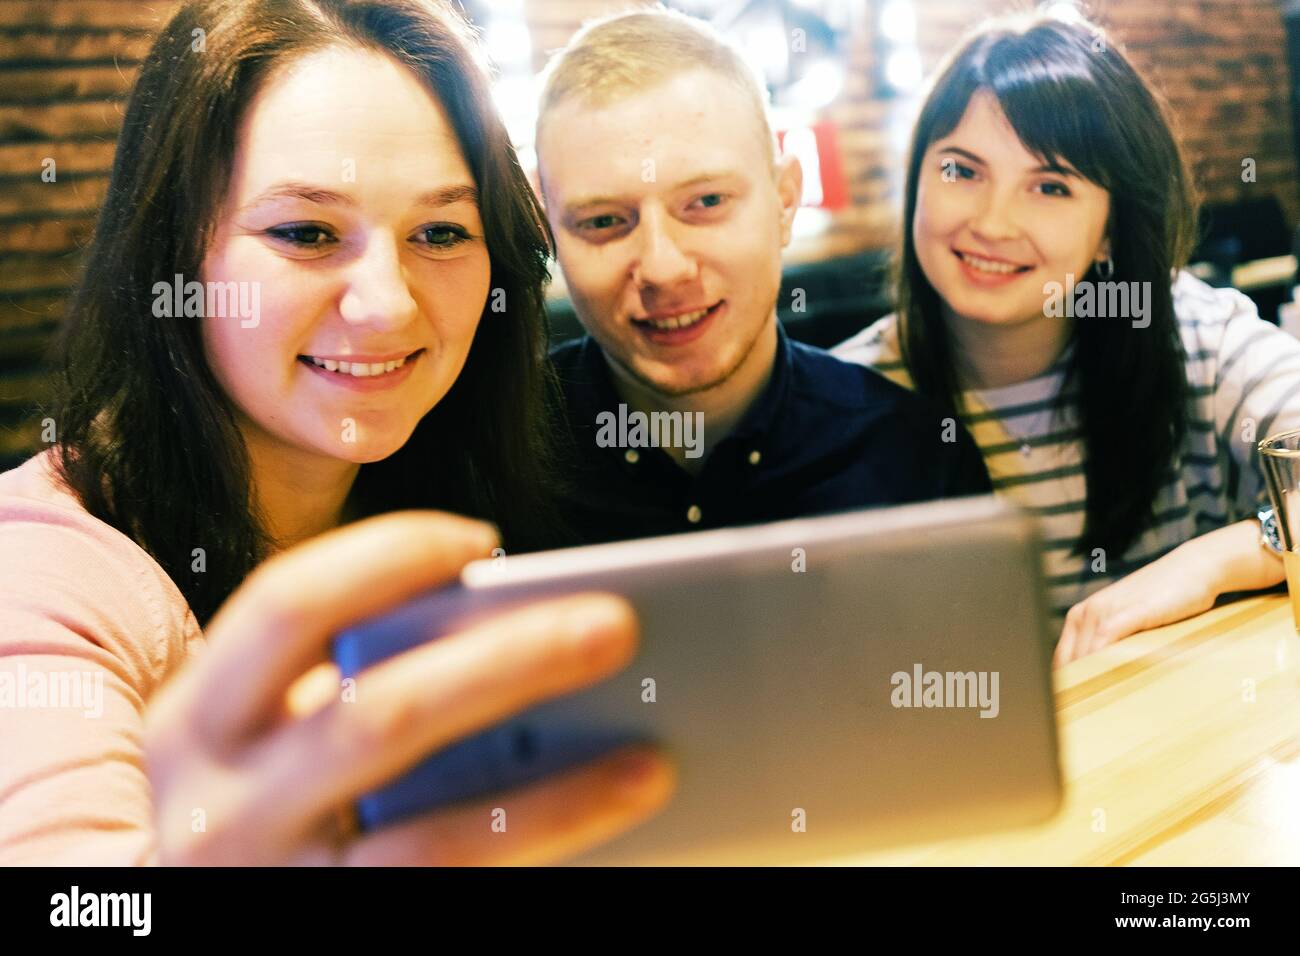 Treffen Sie Freunde in einem Café, und sie machen ein Selfie und lächeln - EINE Gruppe von Millennials in einem Café haben Spaß und lachen - Junge Menschen machen ein Selfie Stockfoto